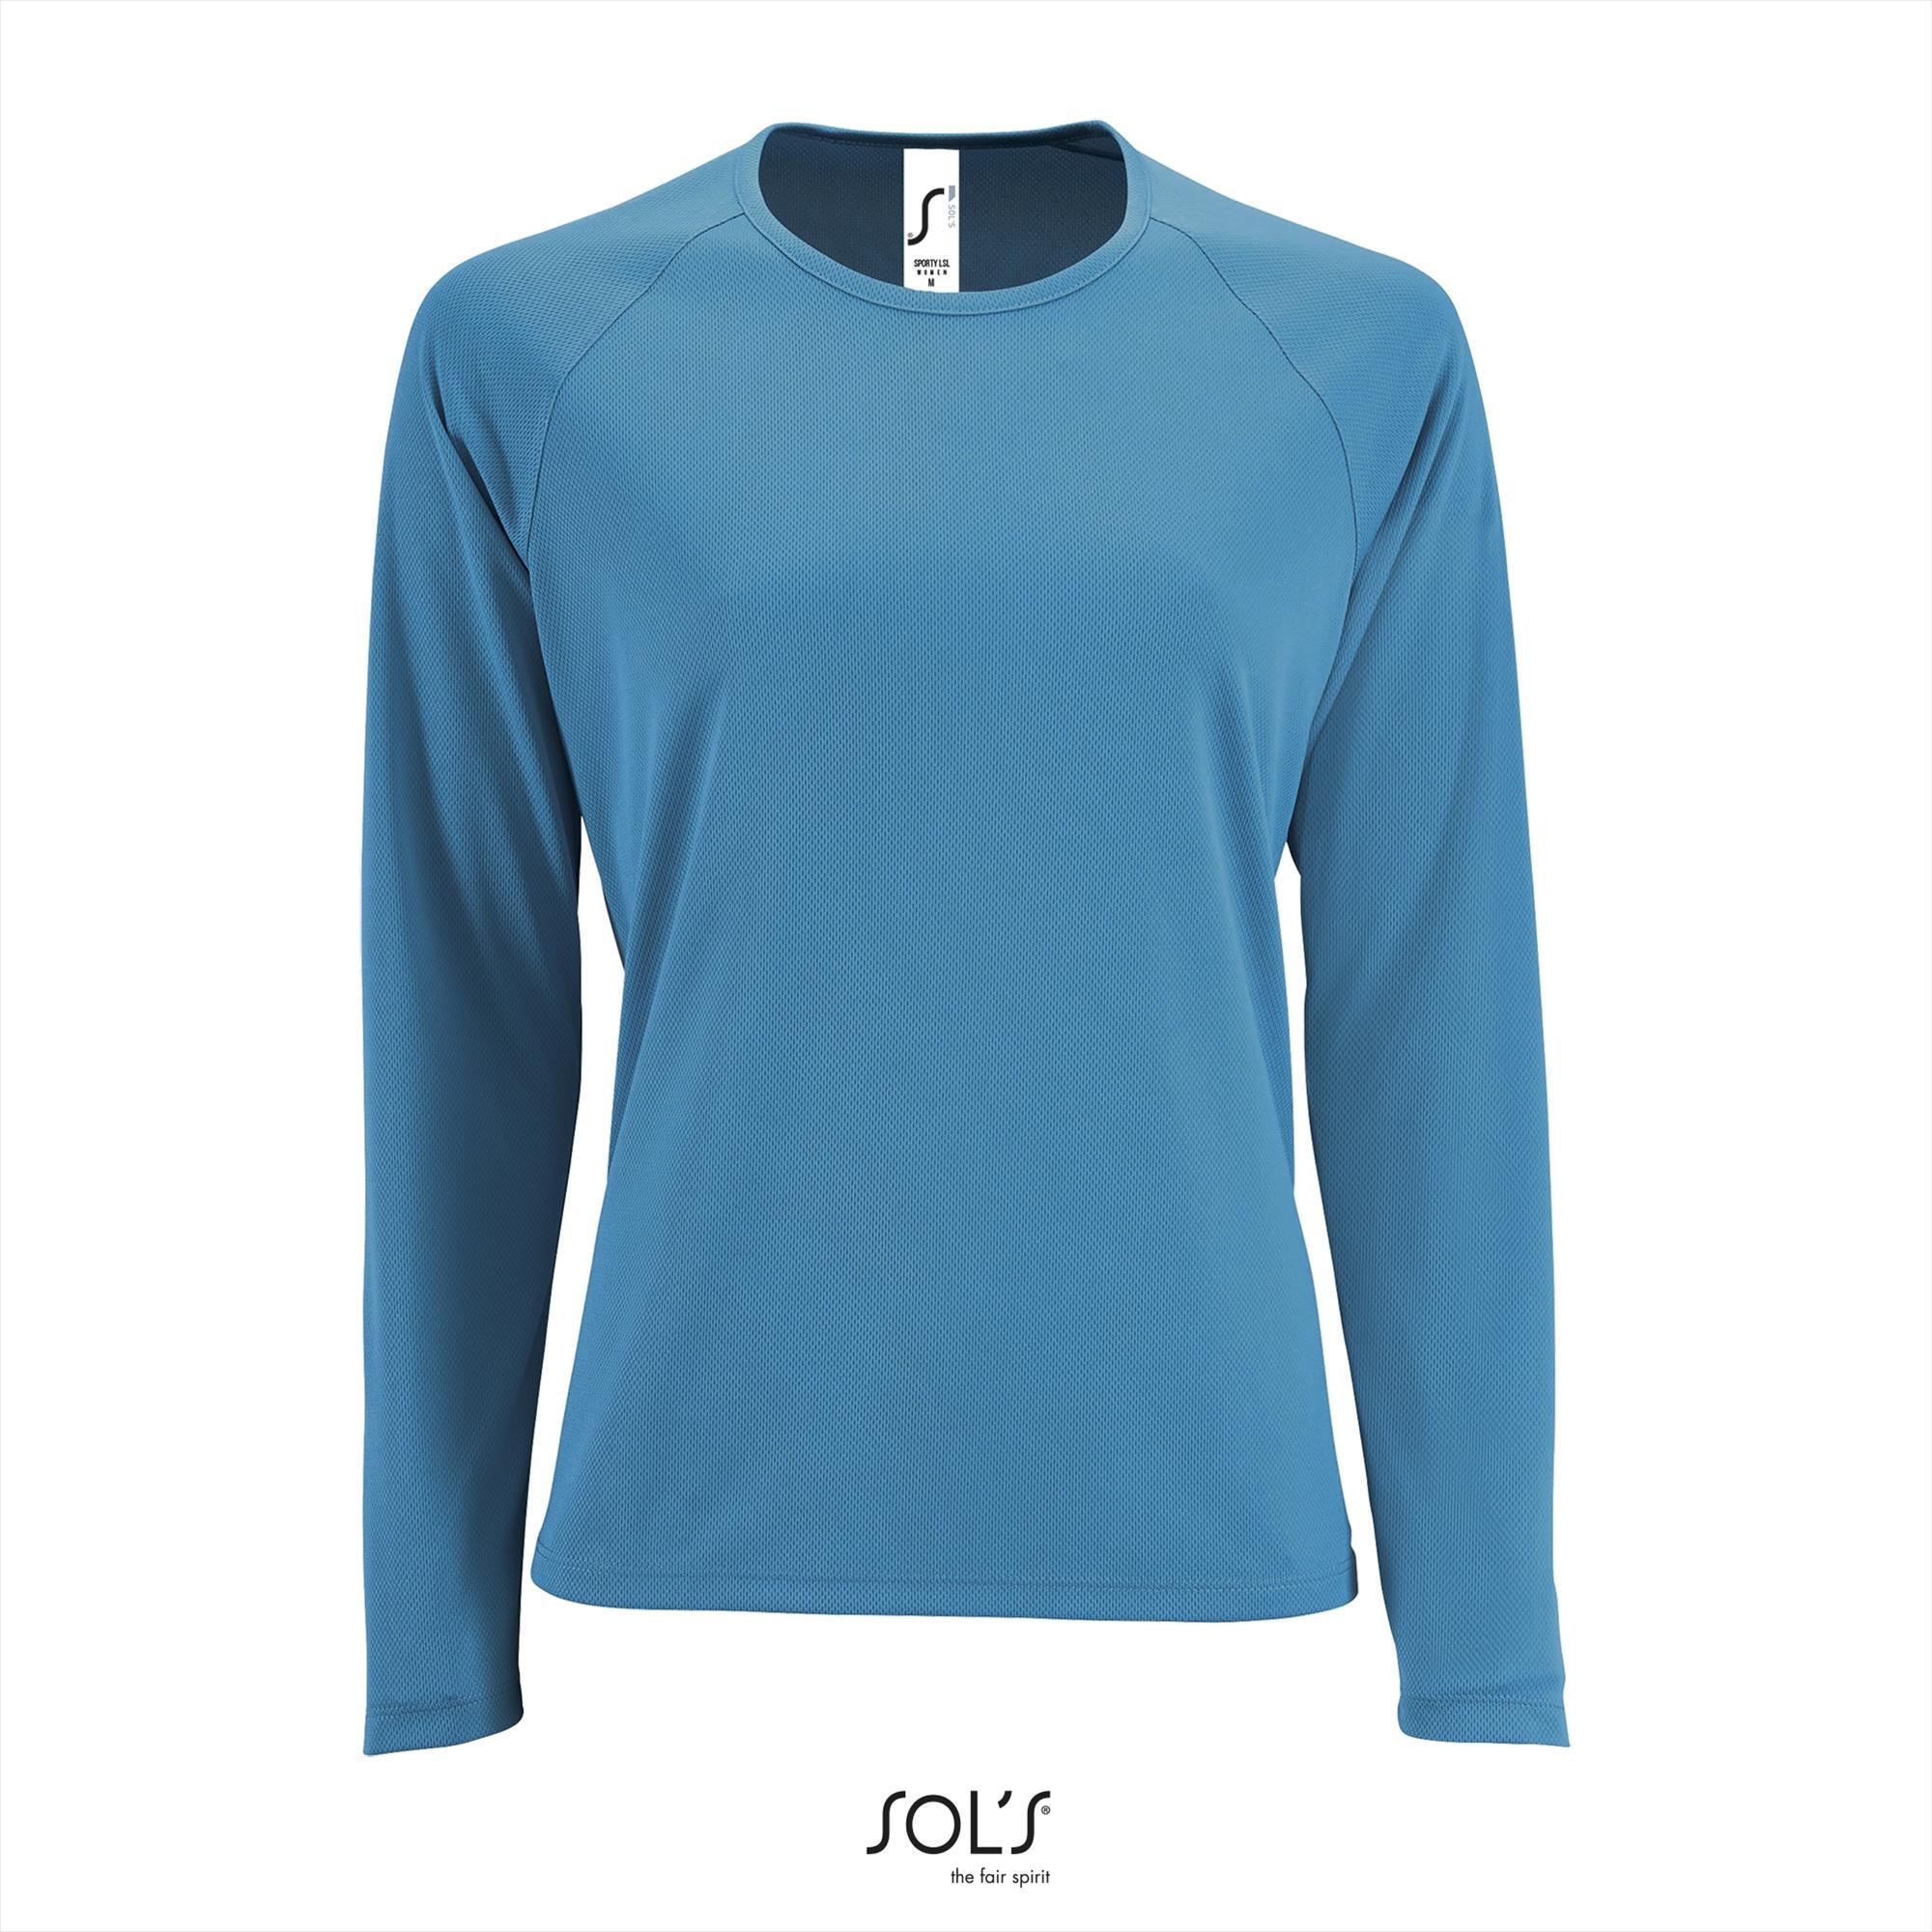 Dames sport T-shirt met lange mouwen aqua blauw